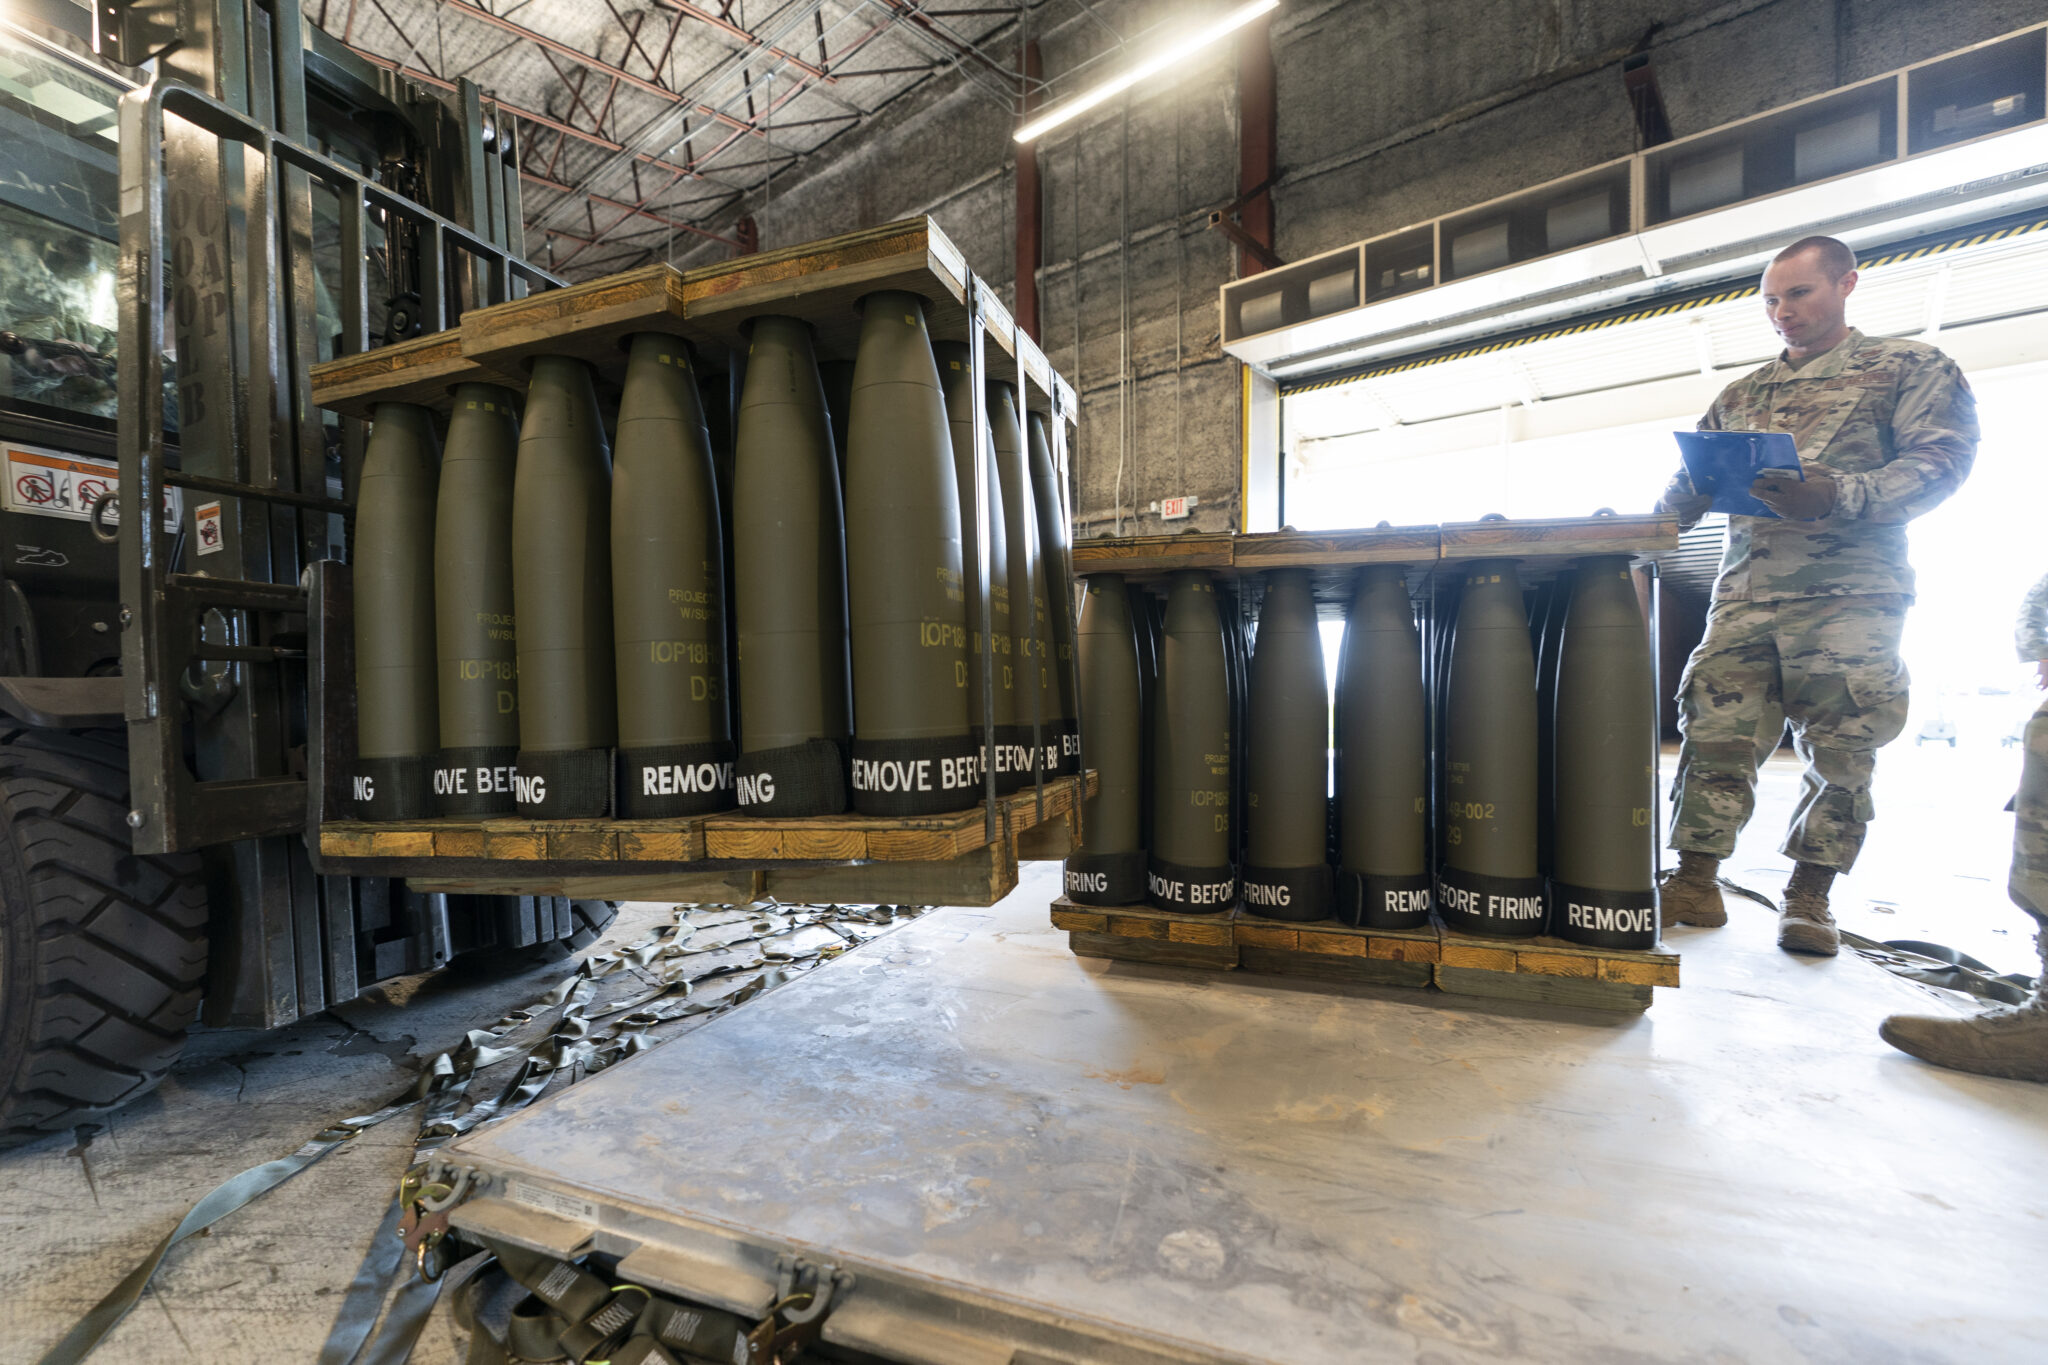 155-миллиметровые снаряды направляются в Украину. Фото Alex Brandon/AP/Scanpix/LETA